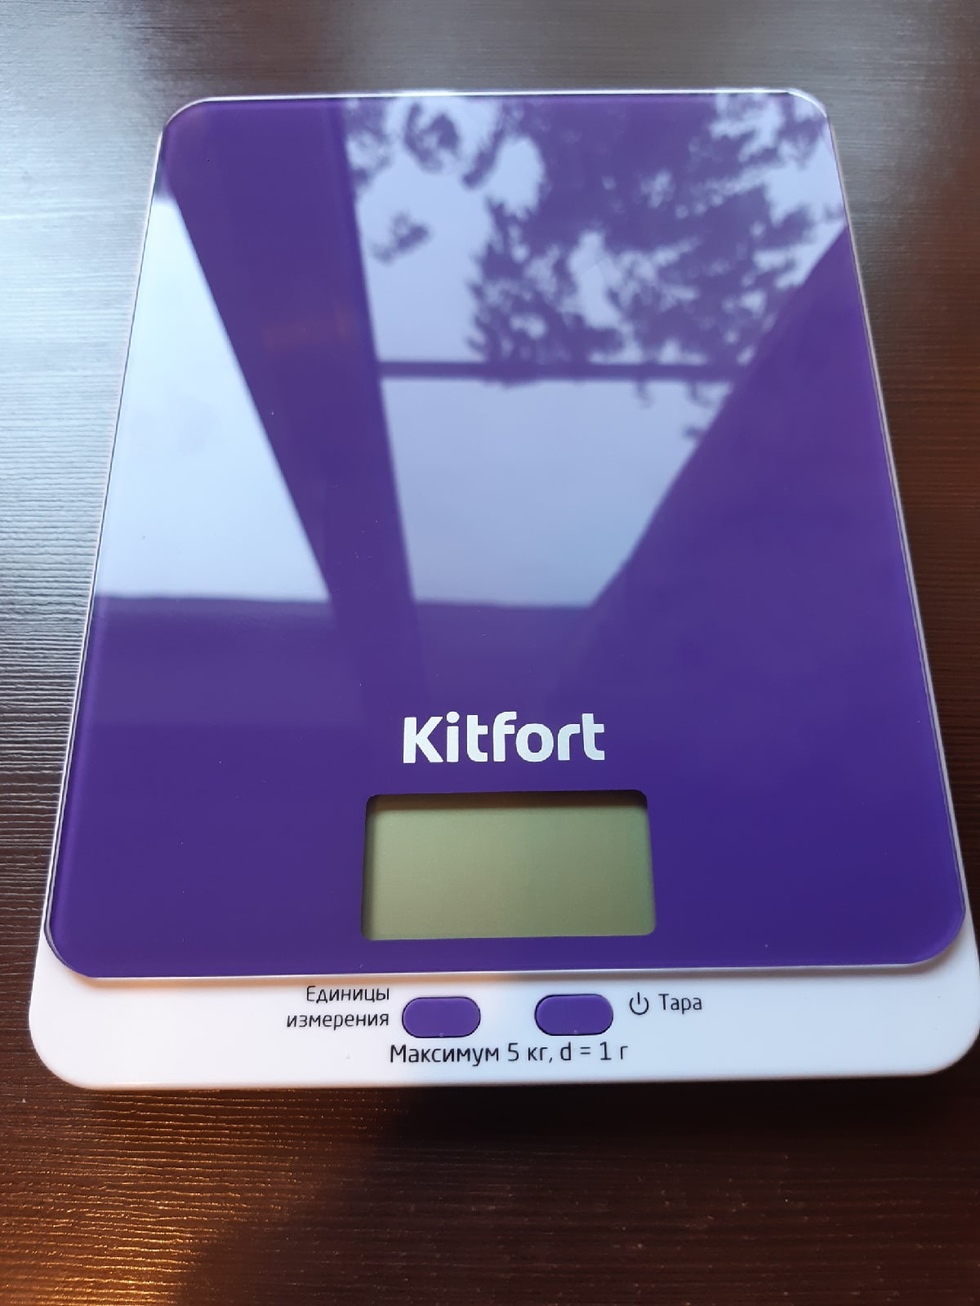 Кухонные весы кт 803. Кухонные весы Kitfort KT-803. Весы кухонные Kitfort KT-803-6 (фиолетовые). Весы Kitfort KT-803. Кухонные весы Kitfort кт-803-6, фиолетовые.